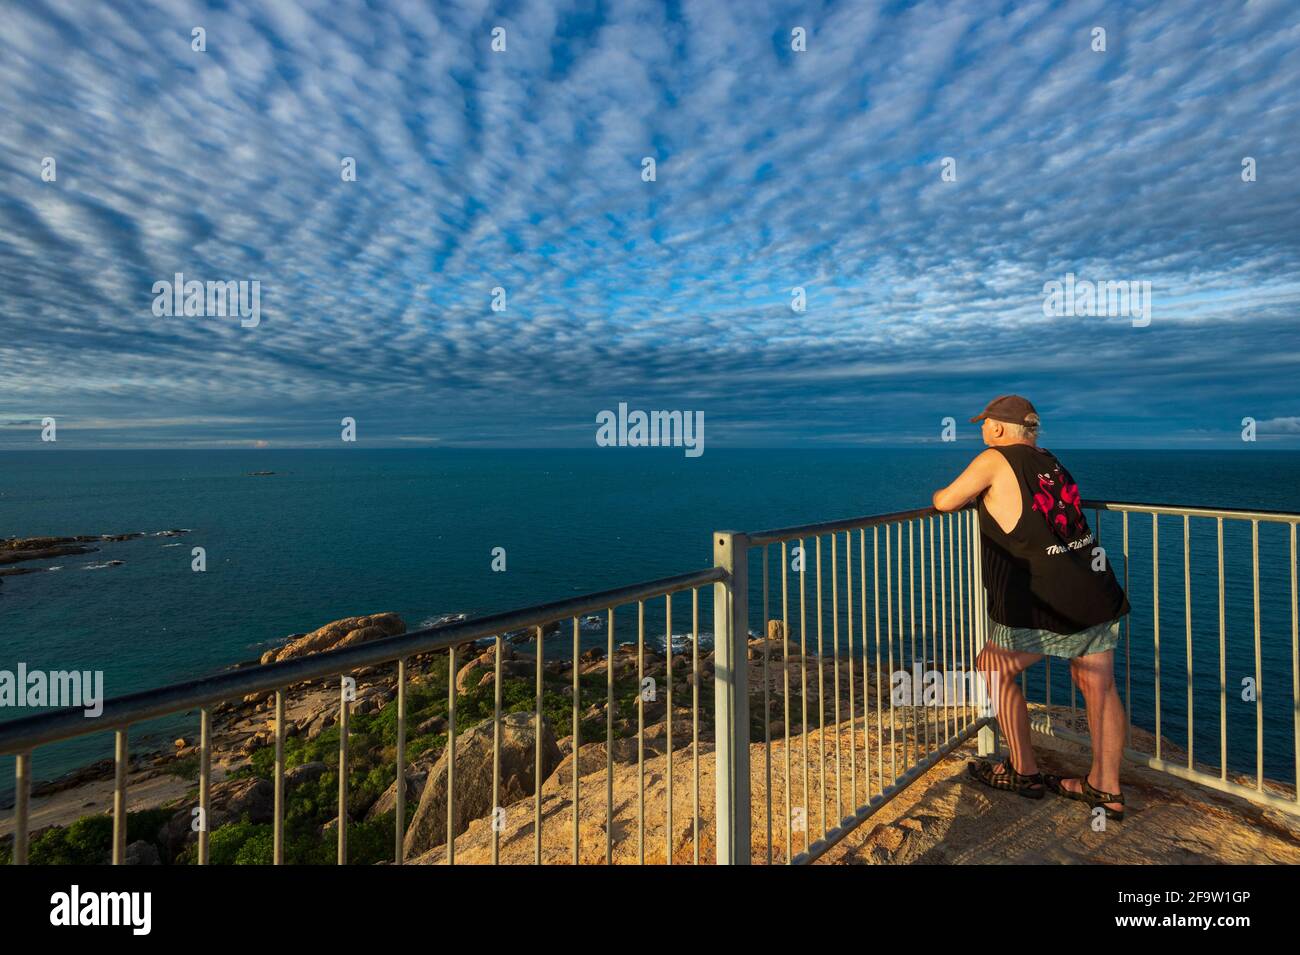 Personne regardant l'incroyable ciel de maquereau au-dessus de la mer à Horseshoe Bay Rotary Lookout, Bowen, Queensland, QLD, Australie Banque D'Images